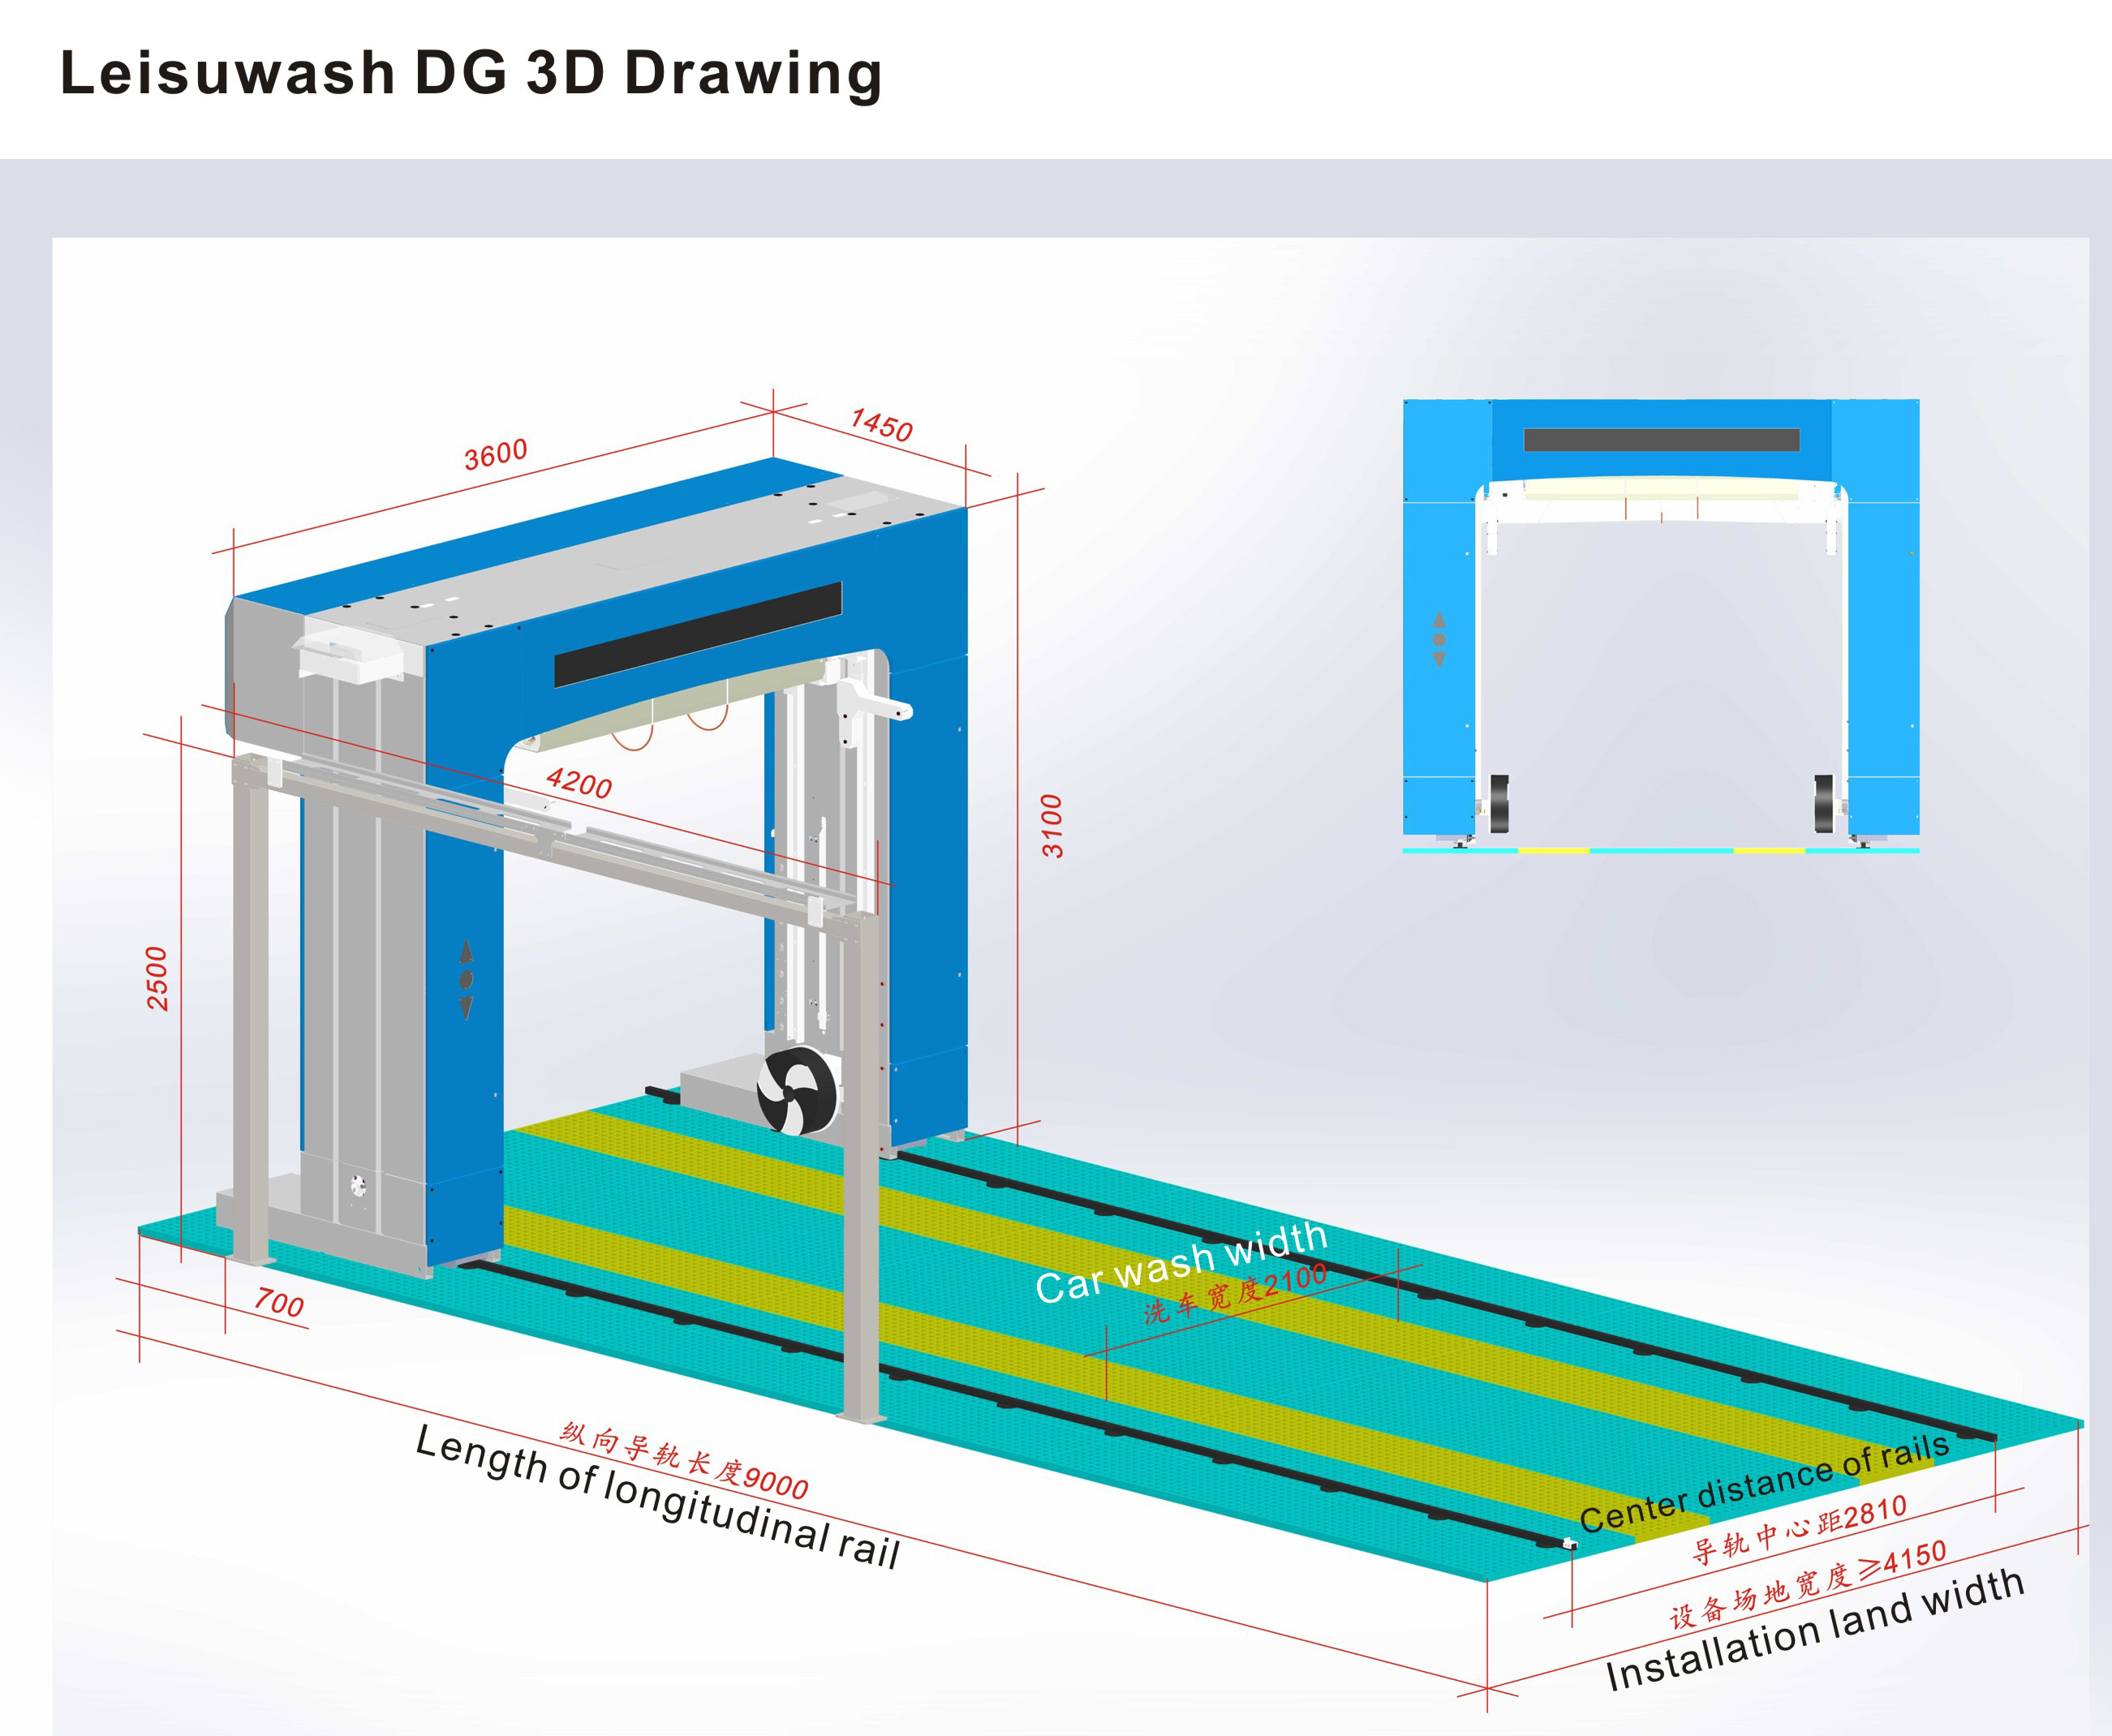 Leisuwash DG 3D Drawing